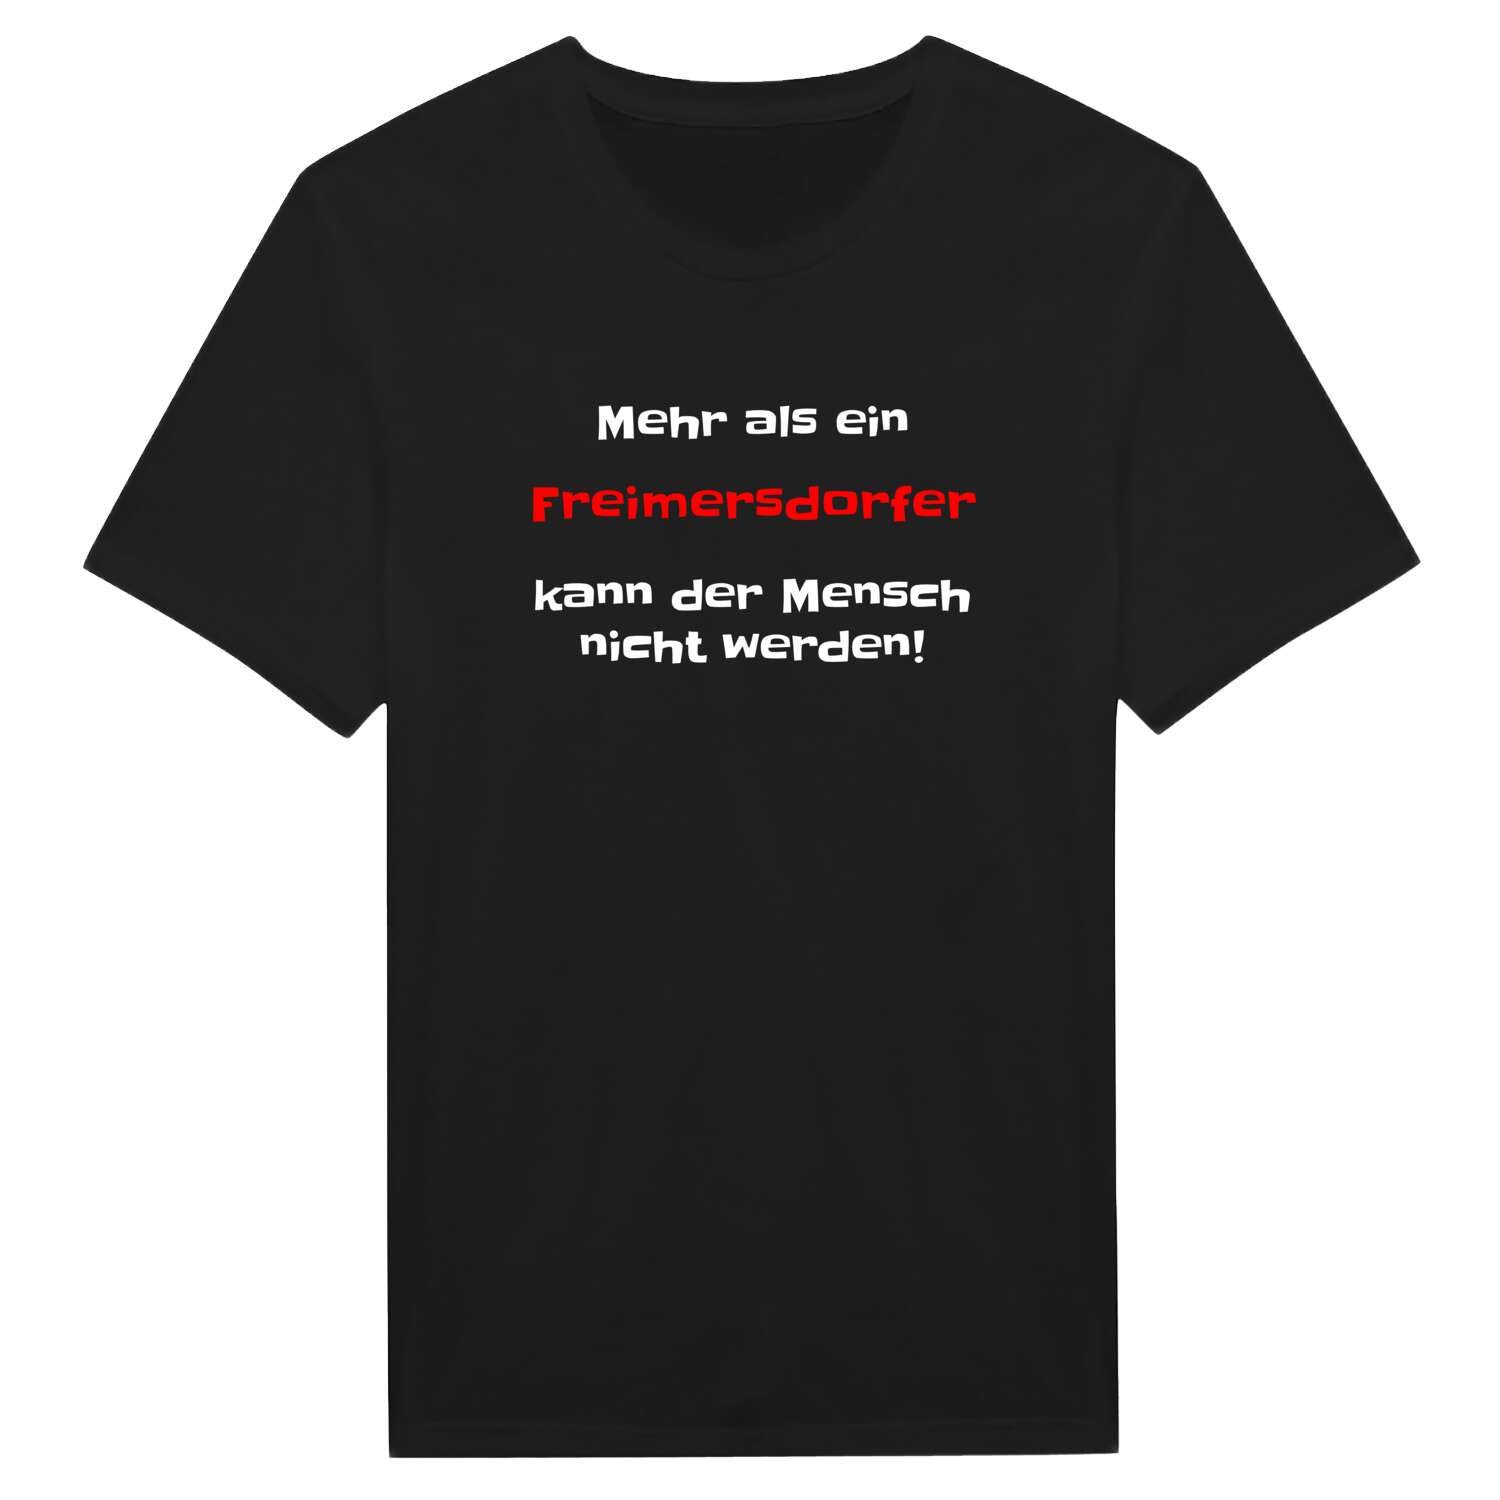 Freimersdorf T-Shirt »Mehr als ein«